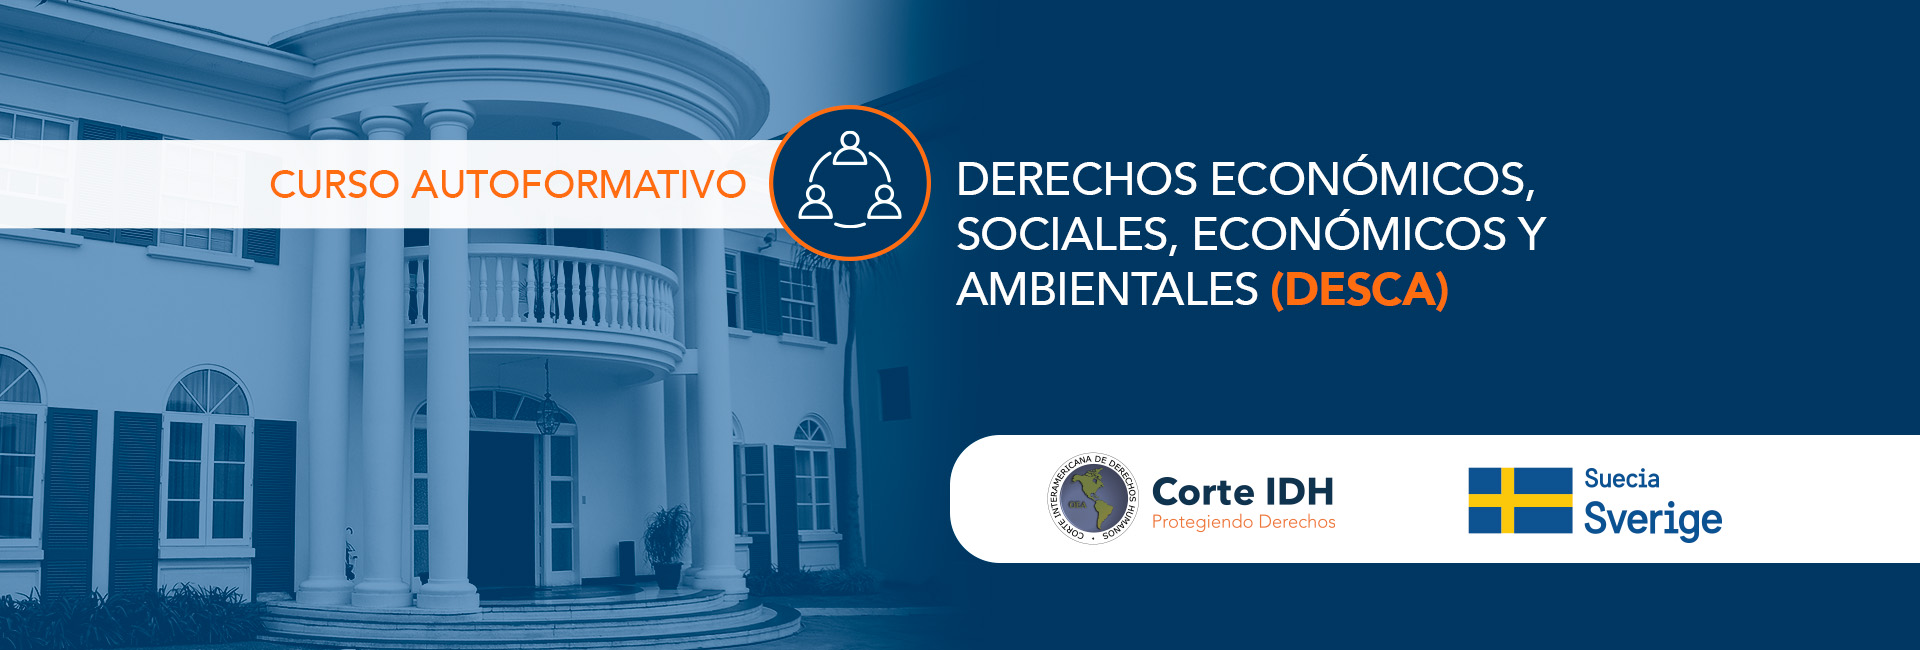 Curso Autoformativo: Derechos económicos, sociales, económicos y ambientales (DESCA) 